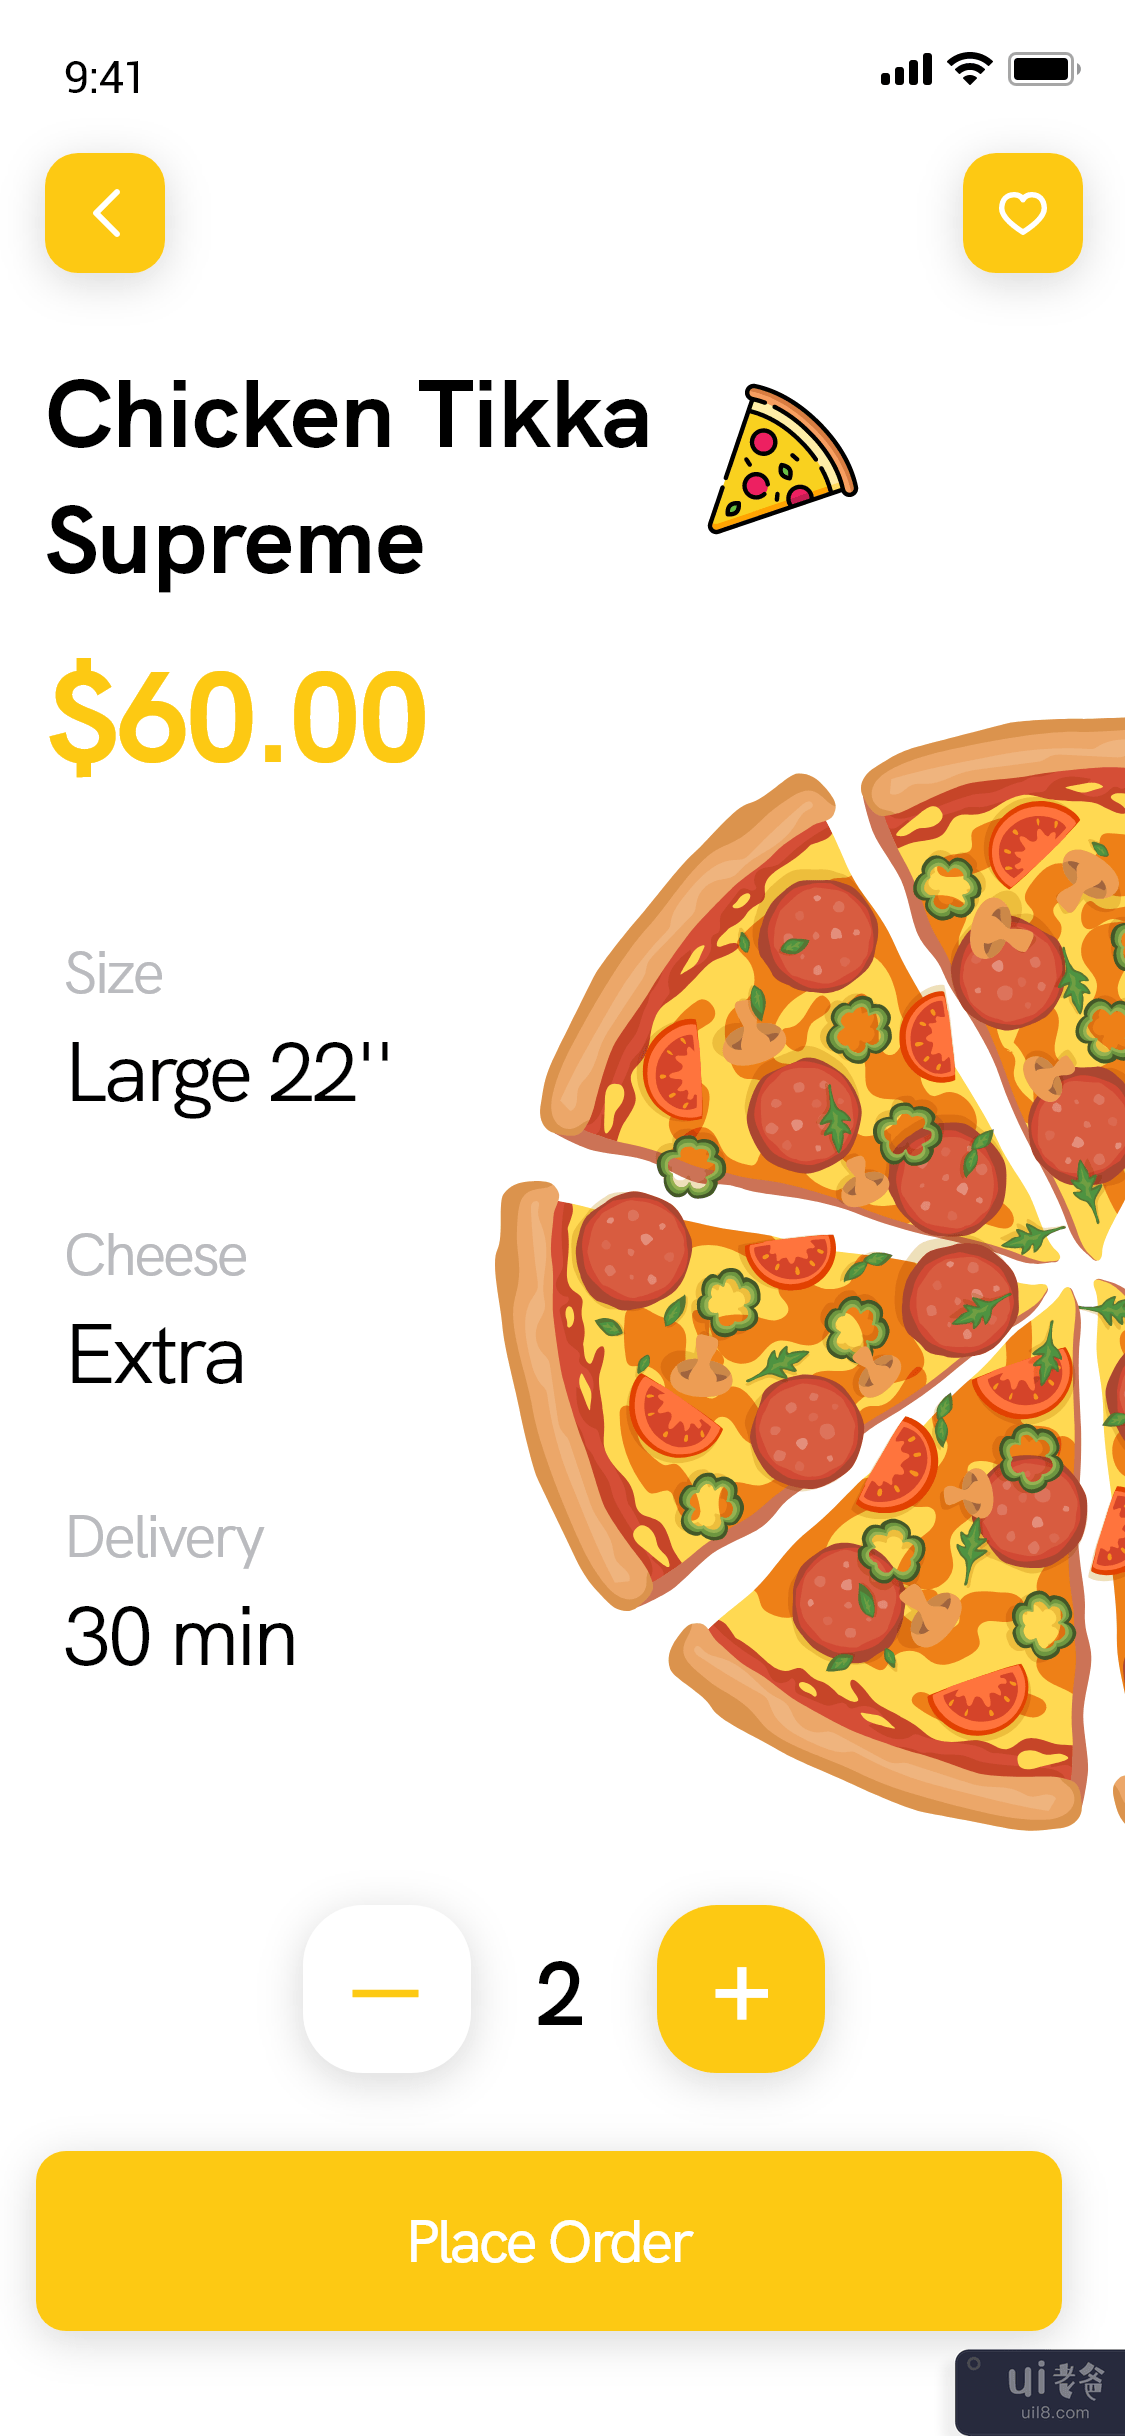 比萨配送应用程序 - 食品配送应用程序(Pizza Delivery app - Food Delivery App)插图1